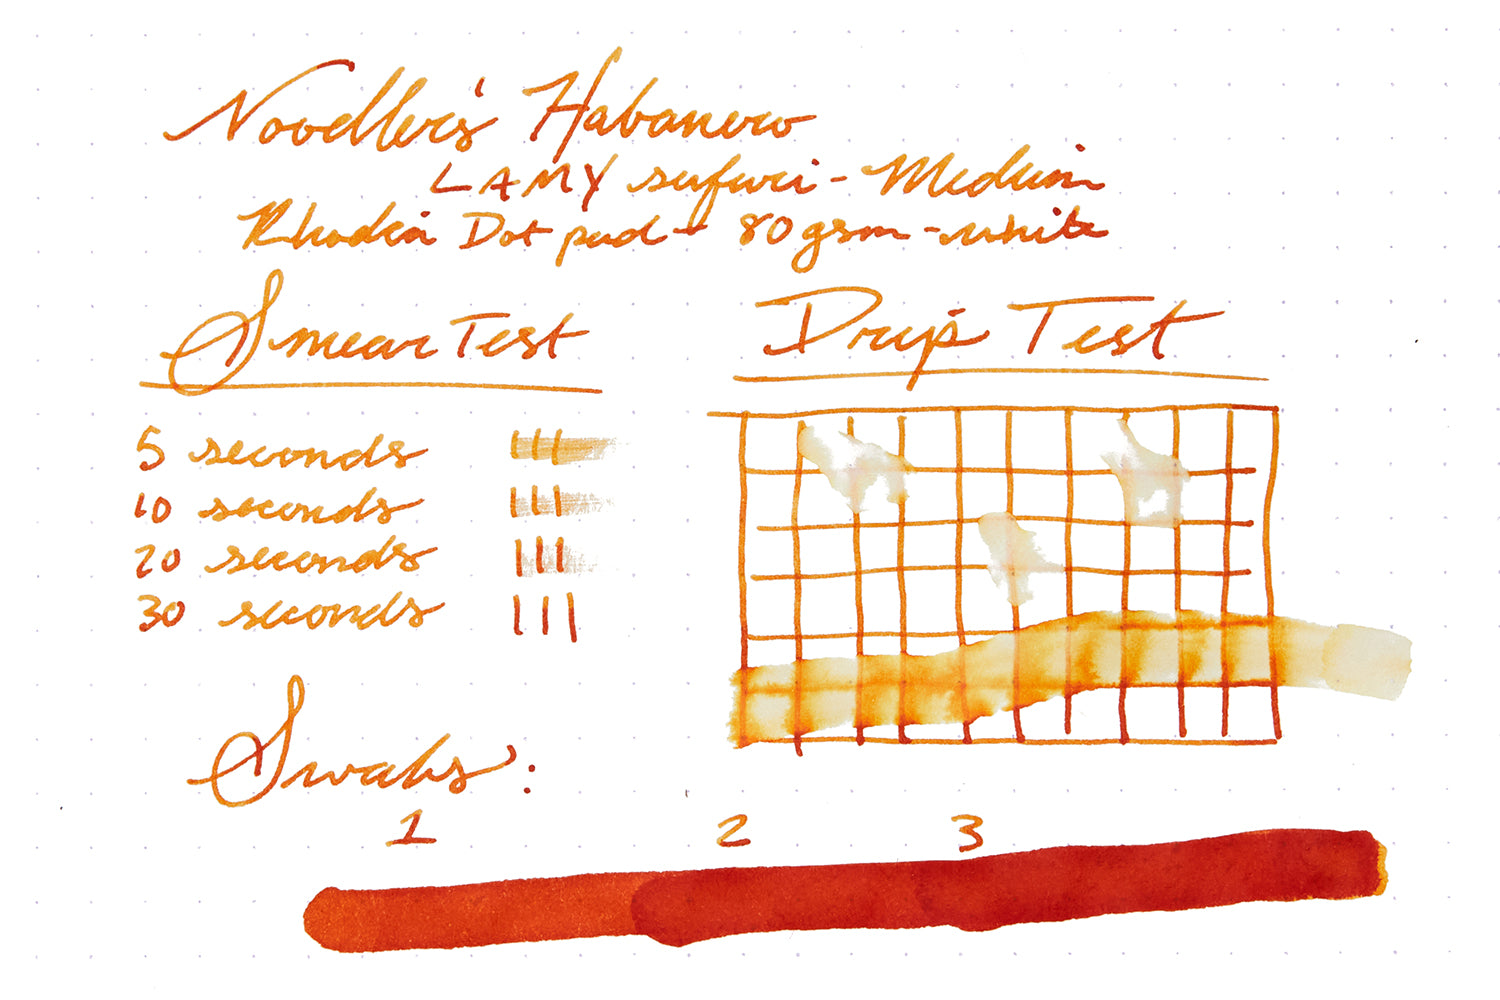 Noodler's Habanero test on Rhodia paper